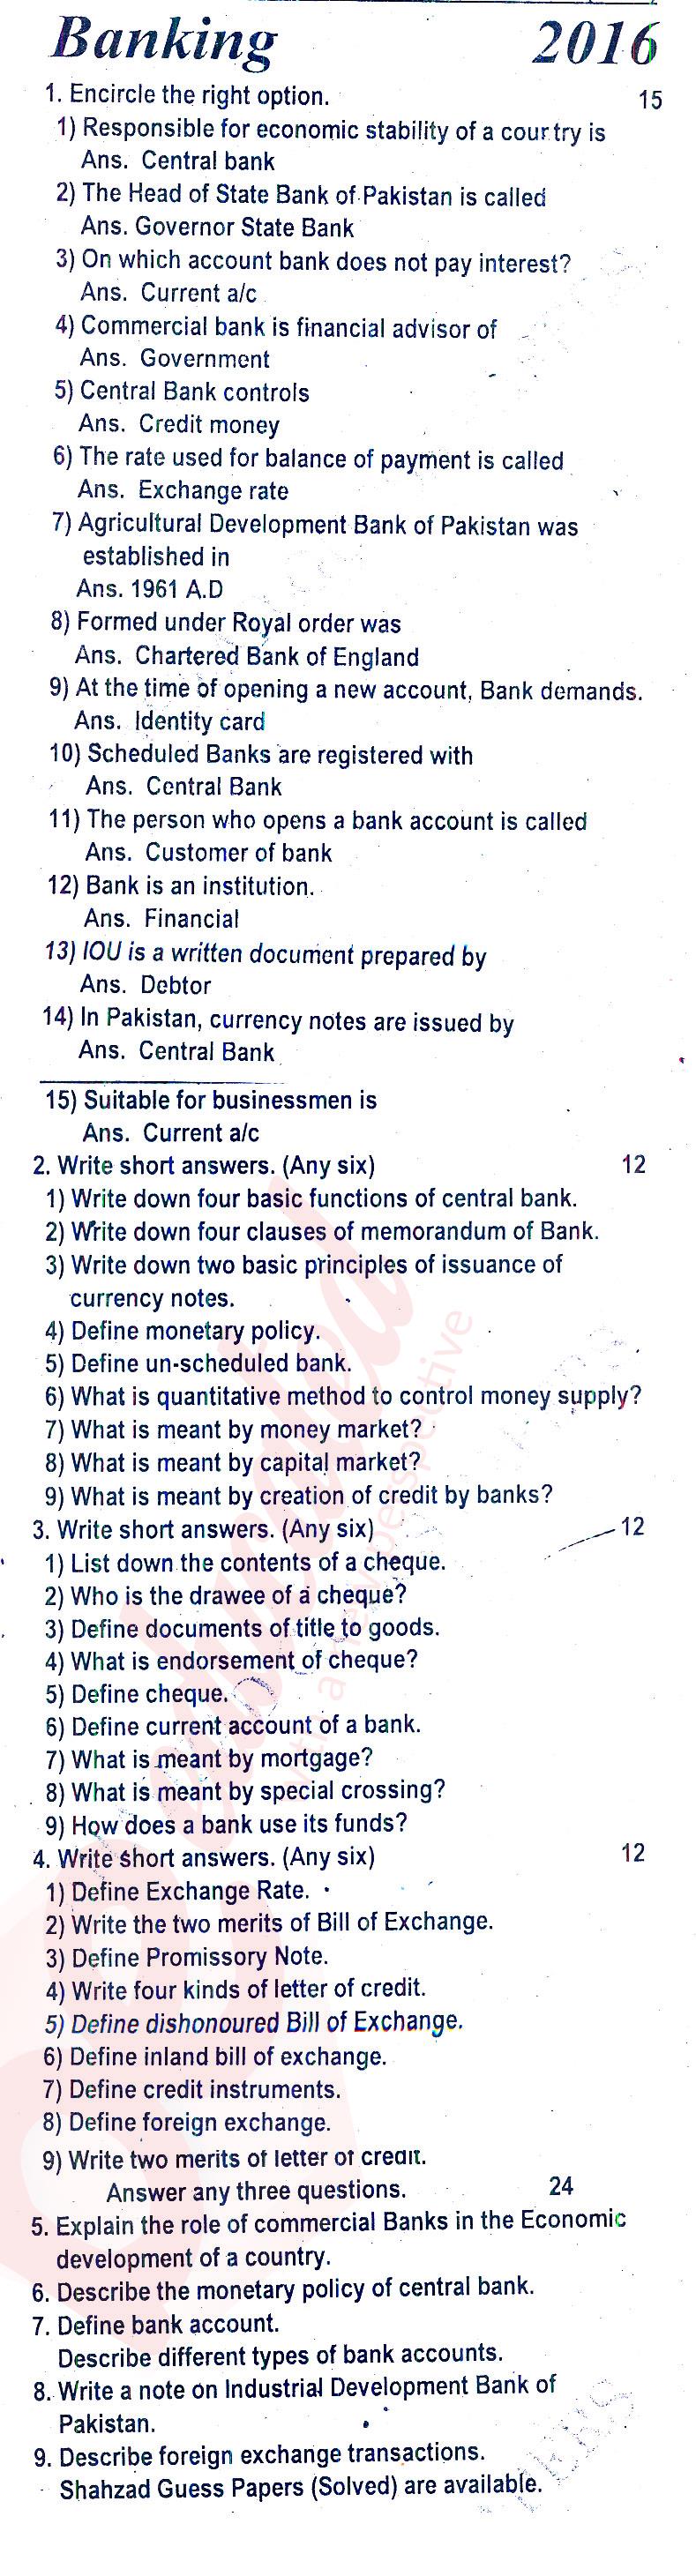 Principles of Banking ICOM Part 2 Past Paper Group 1 BISE Rawalpindi 2016